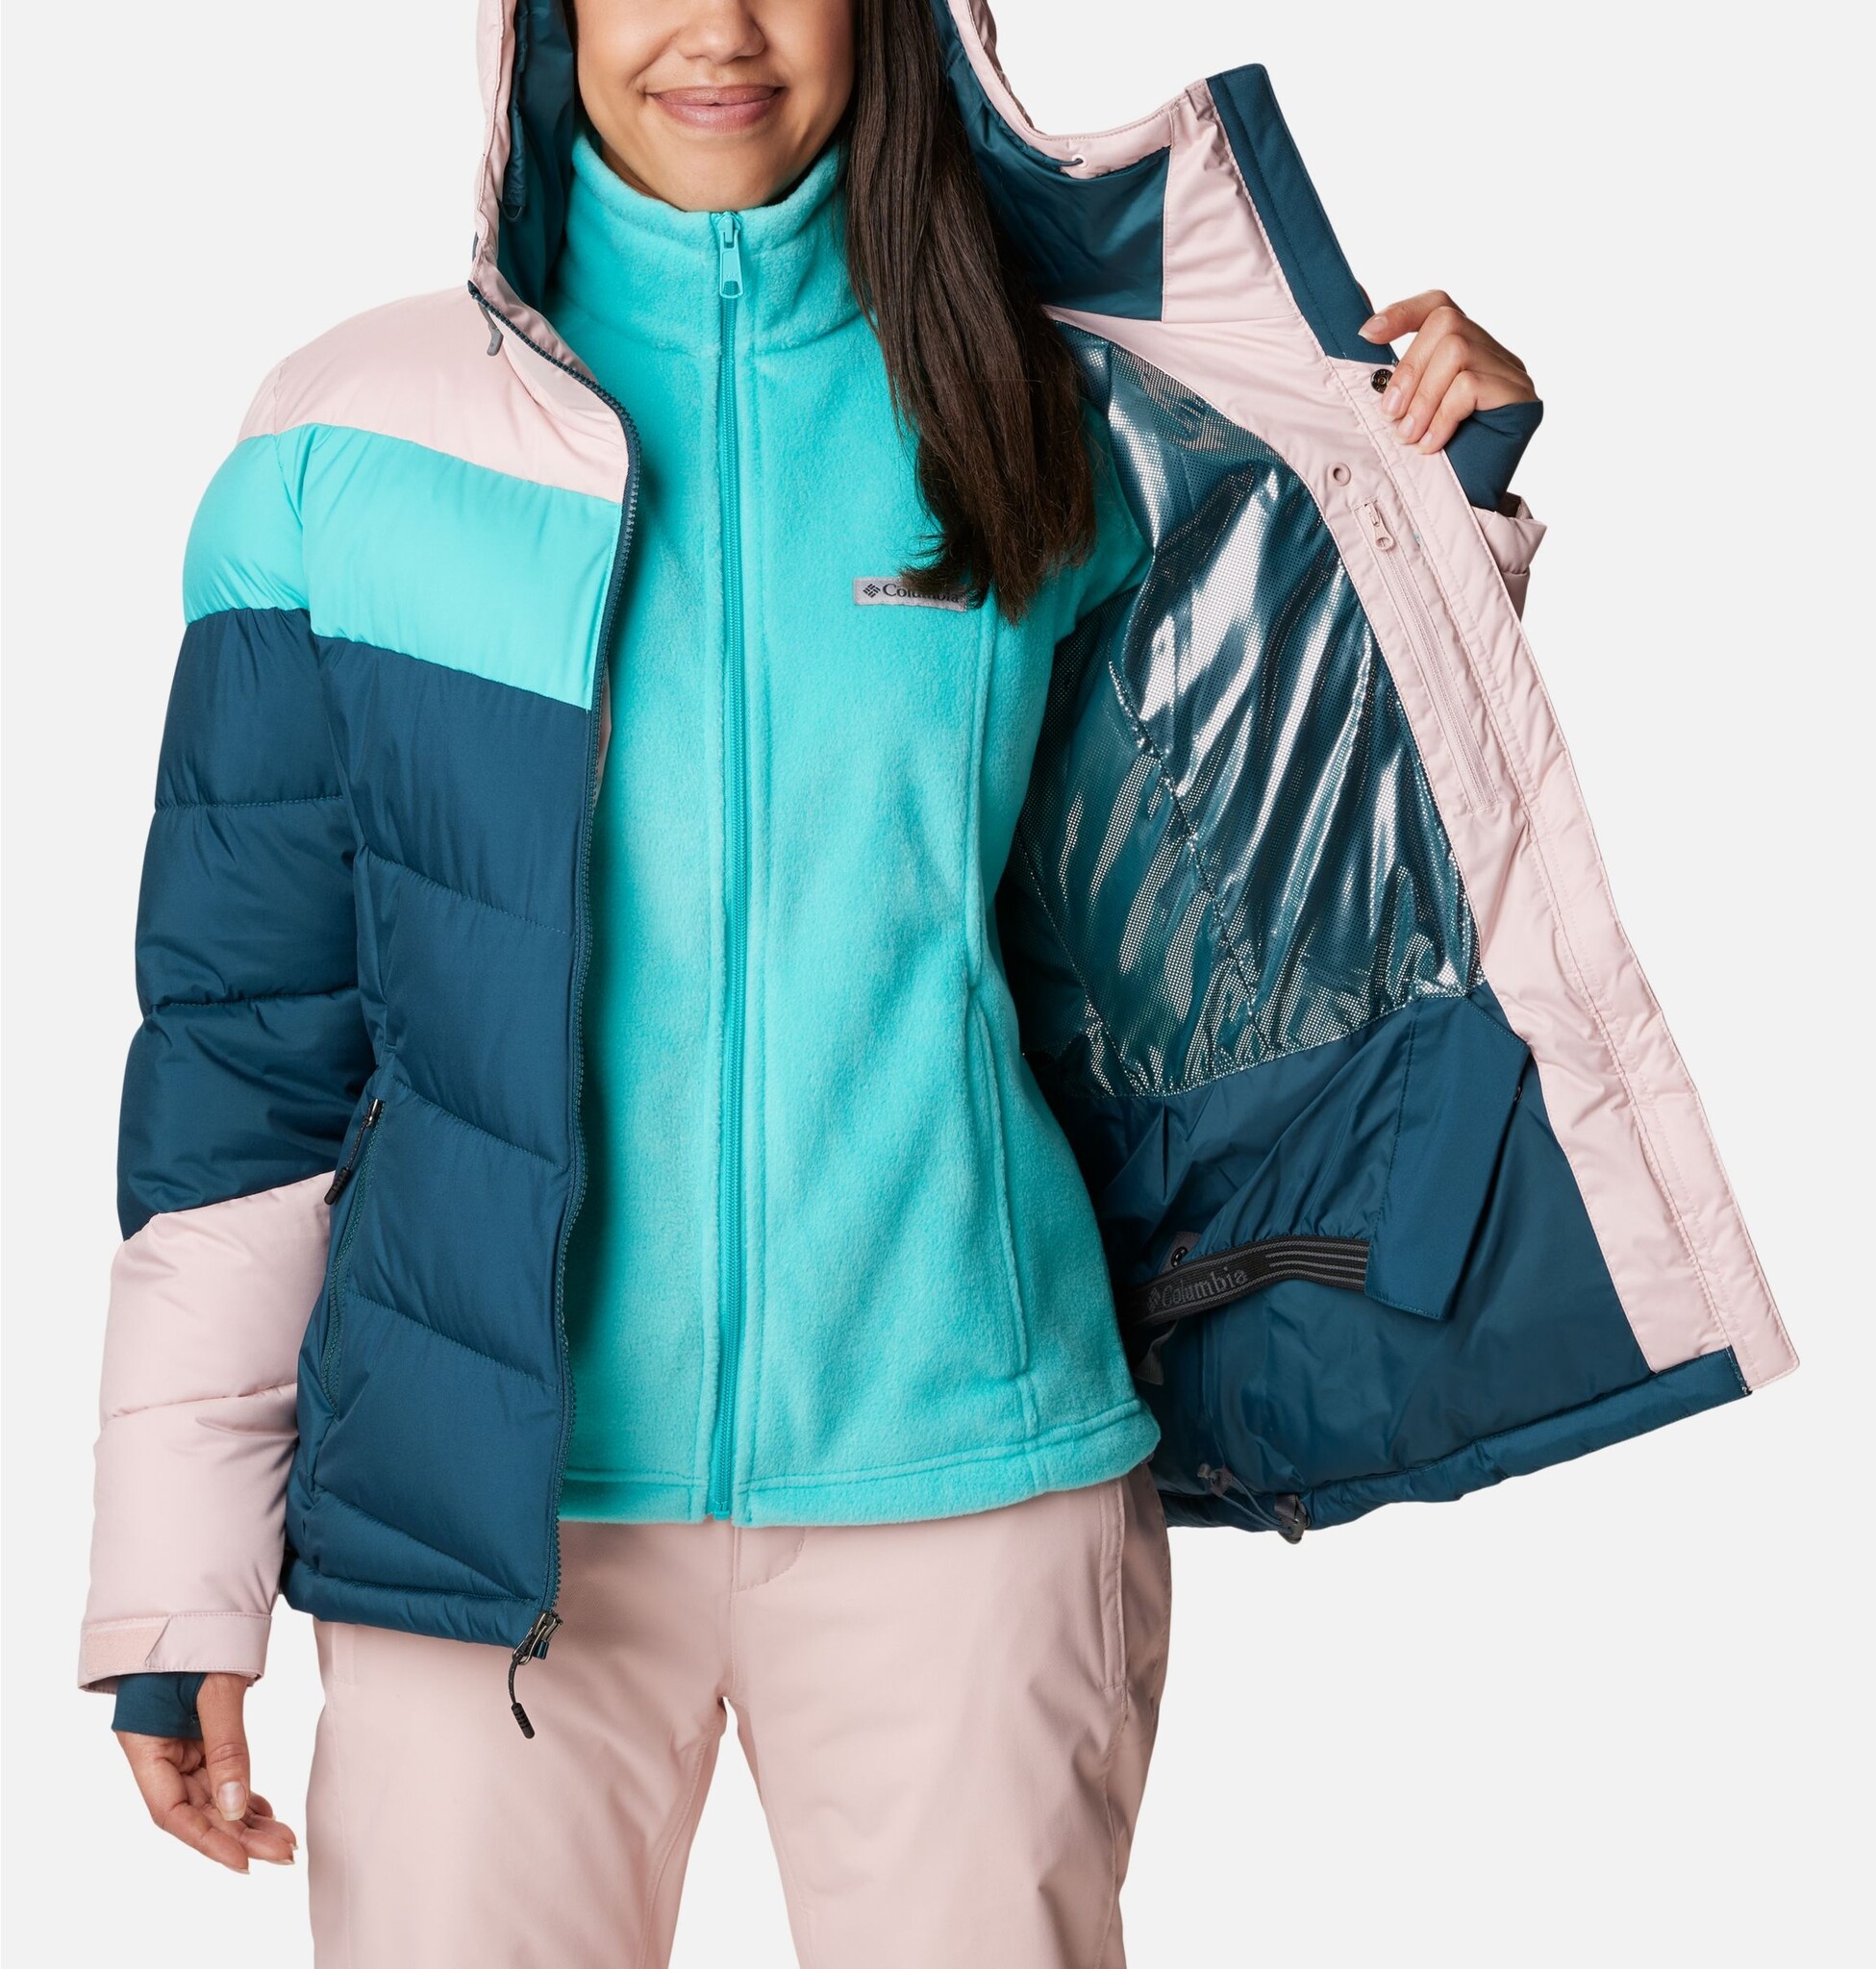 Columbia Abbott Peak Insulated Women Jacket at Sporting Life